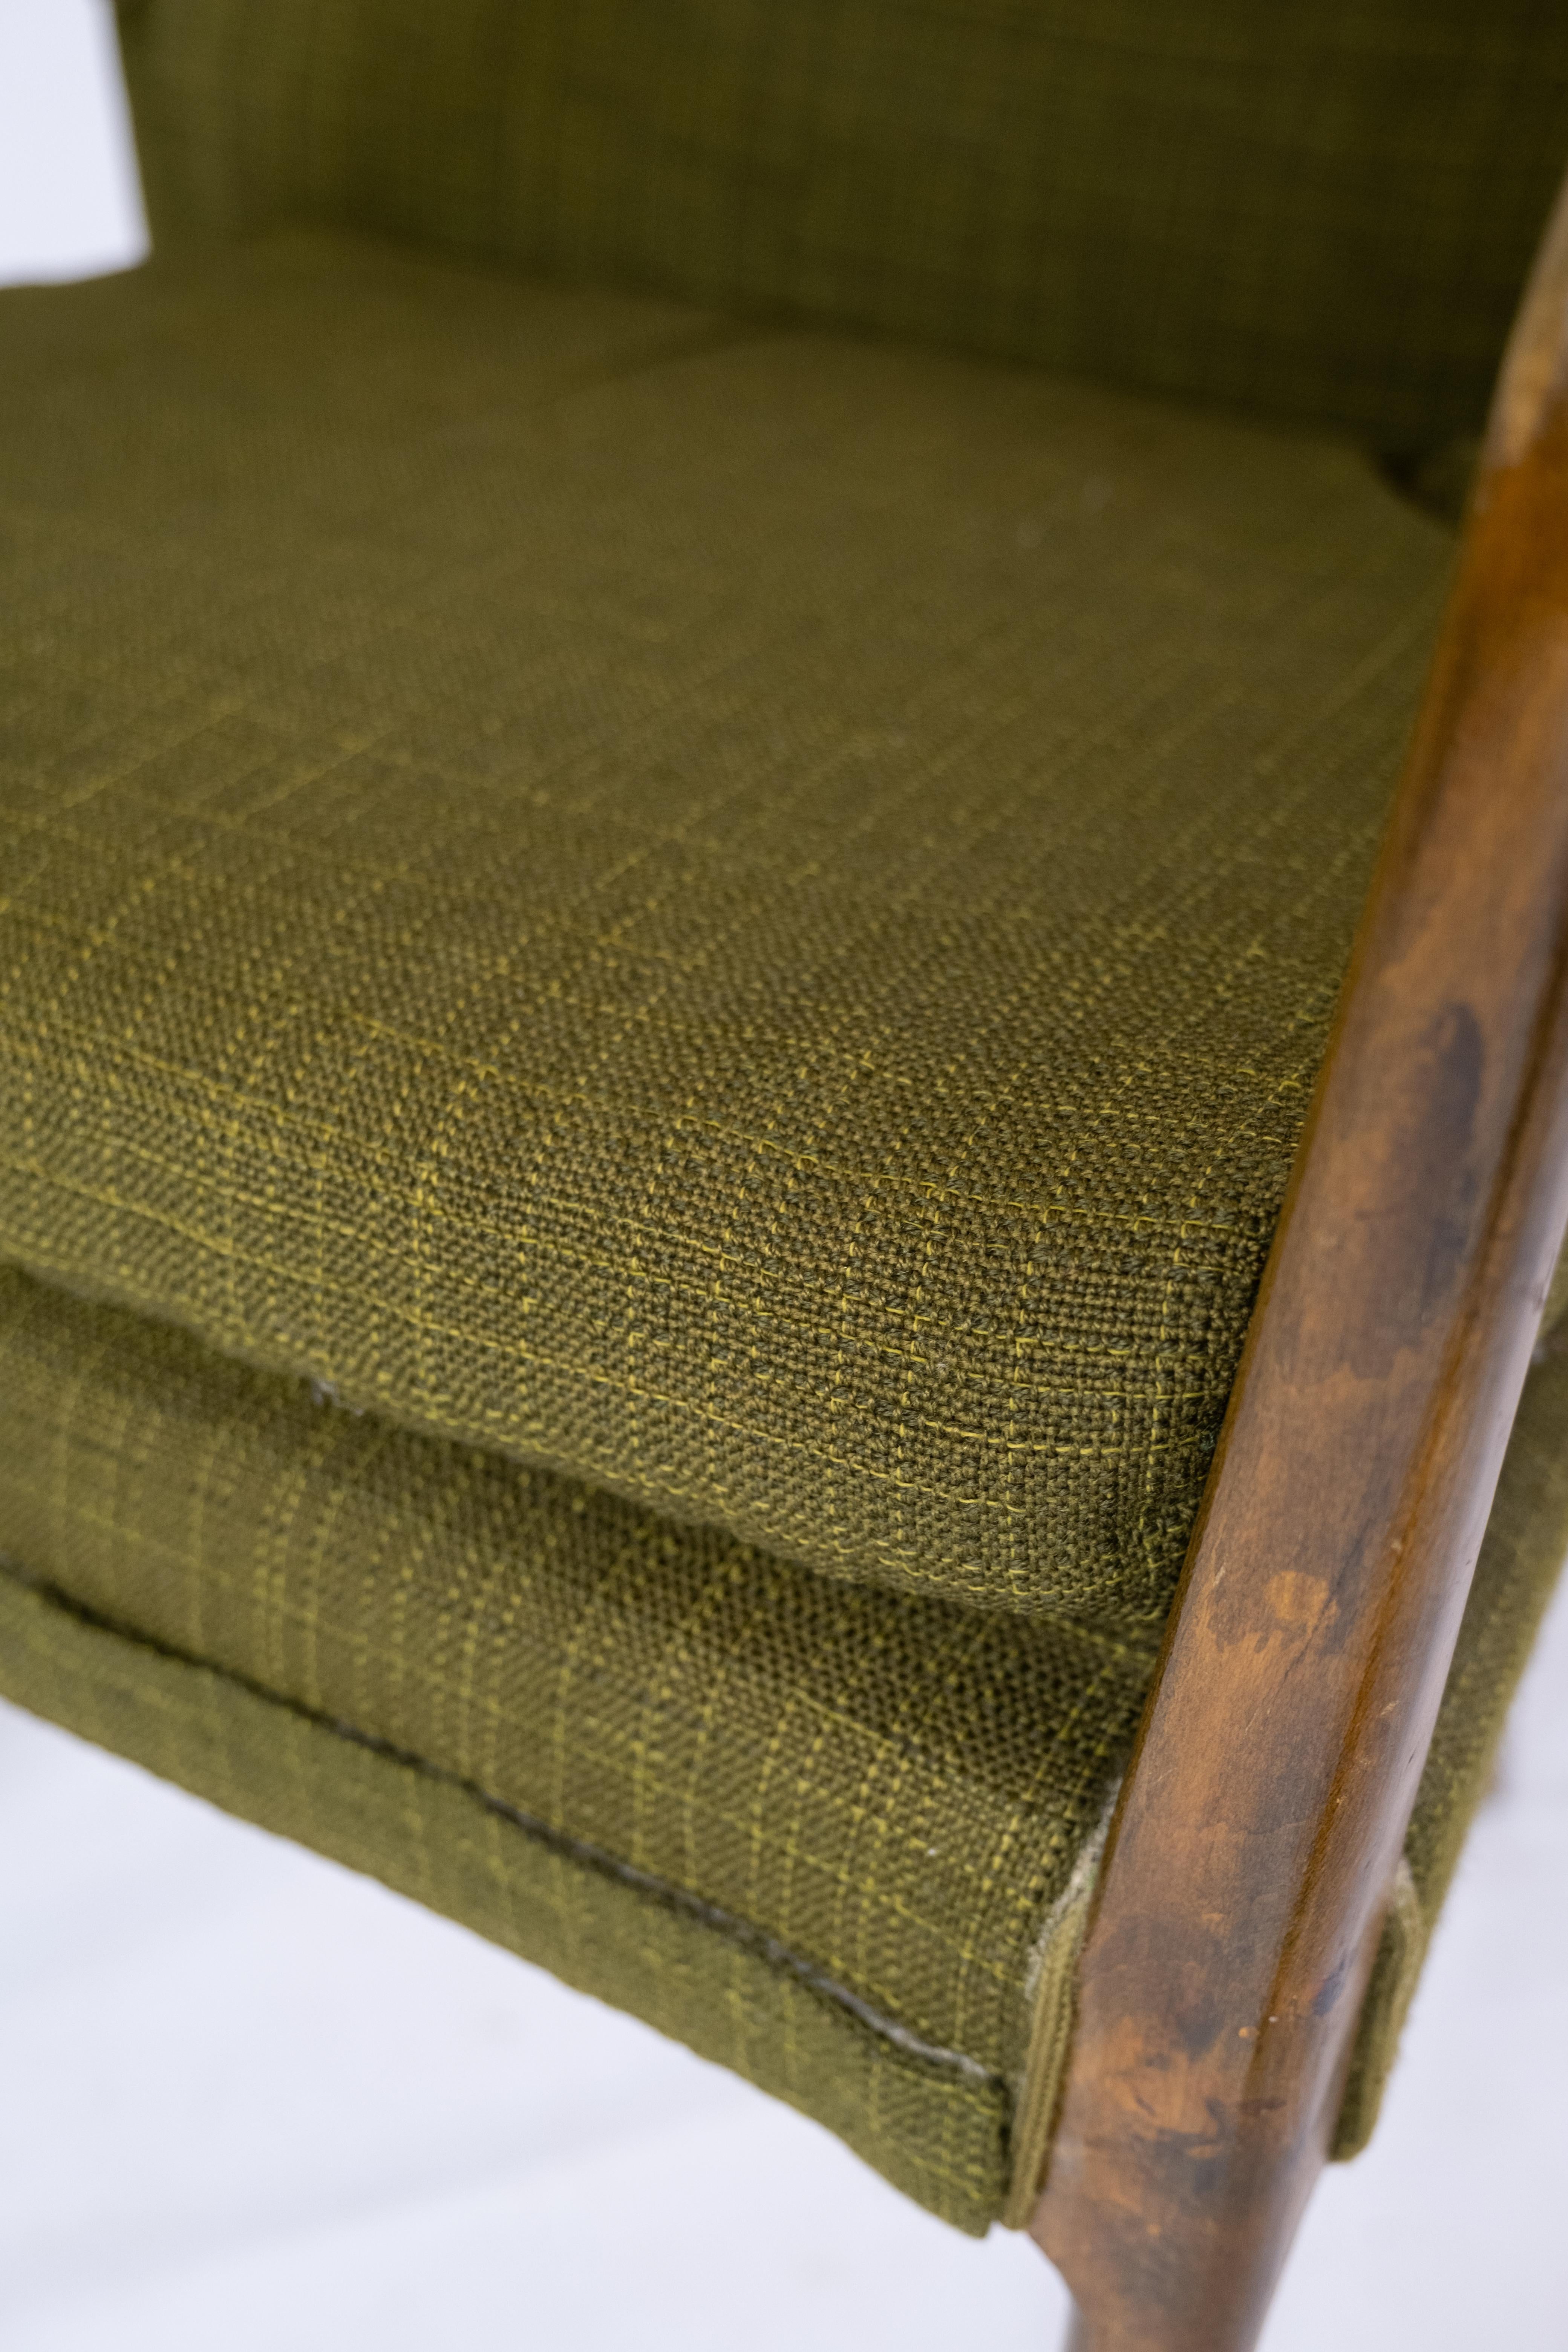 Ce fauteuil, fabriqué en bouleau et revêtu de son tissu vert foncé d'origine, incarne l'élégance intemporelle et le savoir-faire exceptionnel du design danois des années 1950.

L'utilisation du bois de bouleau ajoute non seulement une touche de